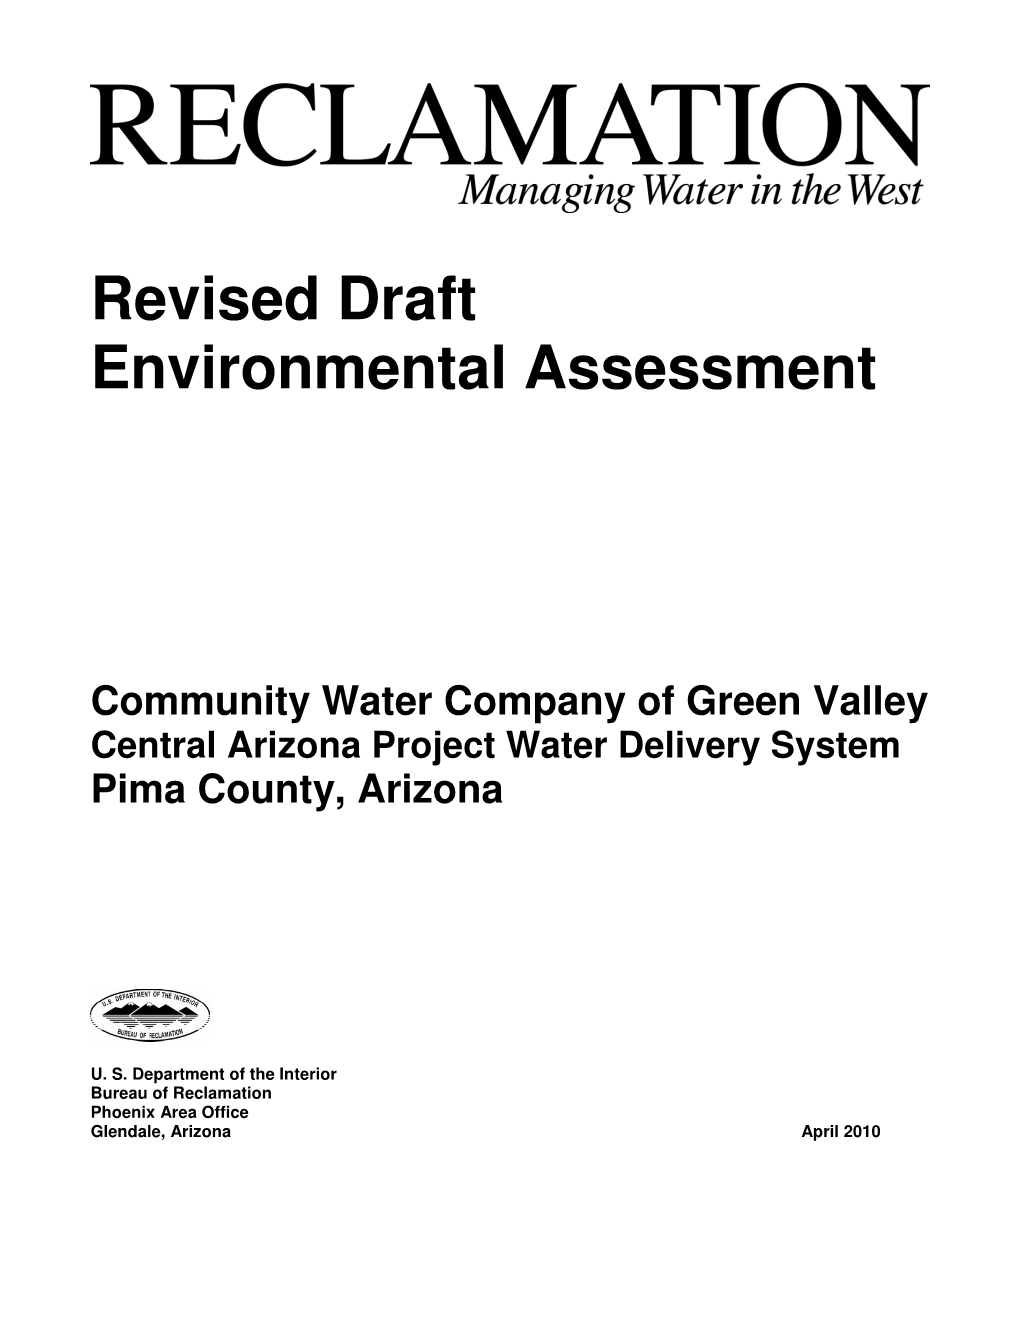 Revised Draft Environmental Assessment